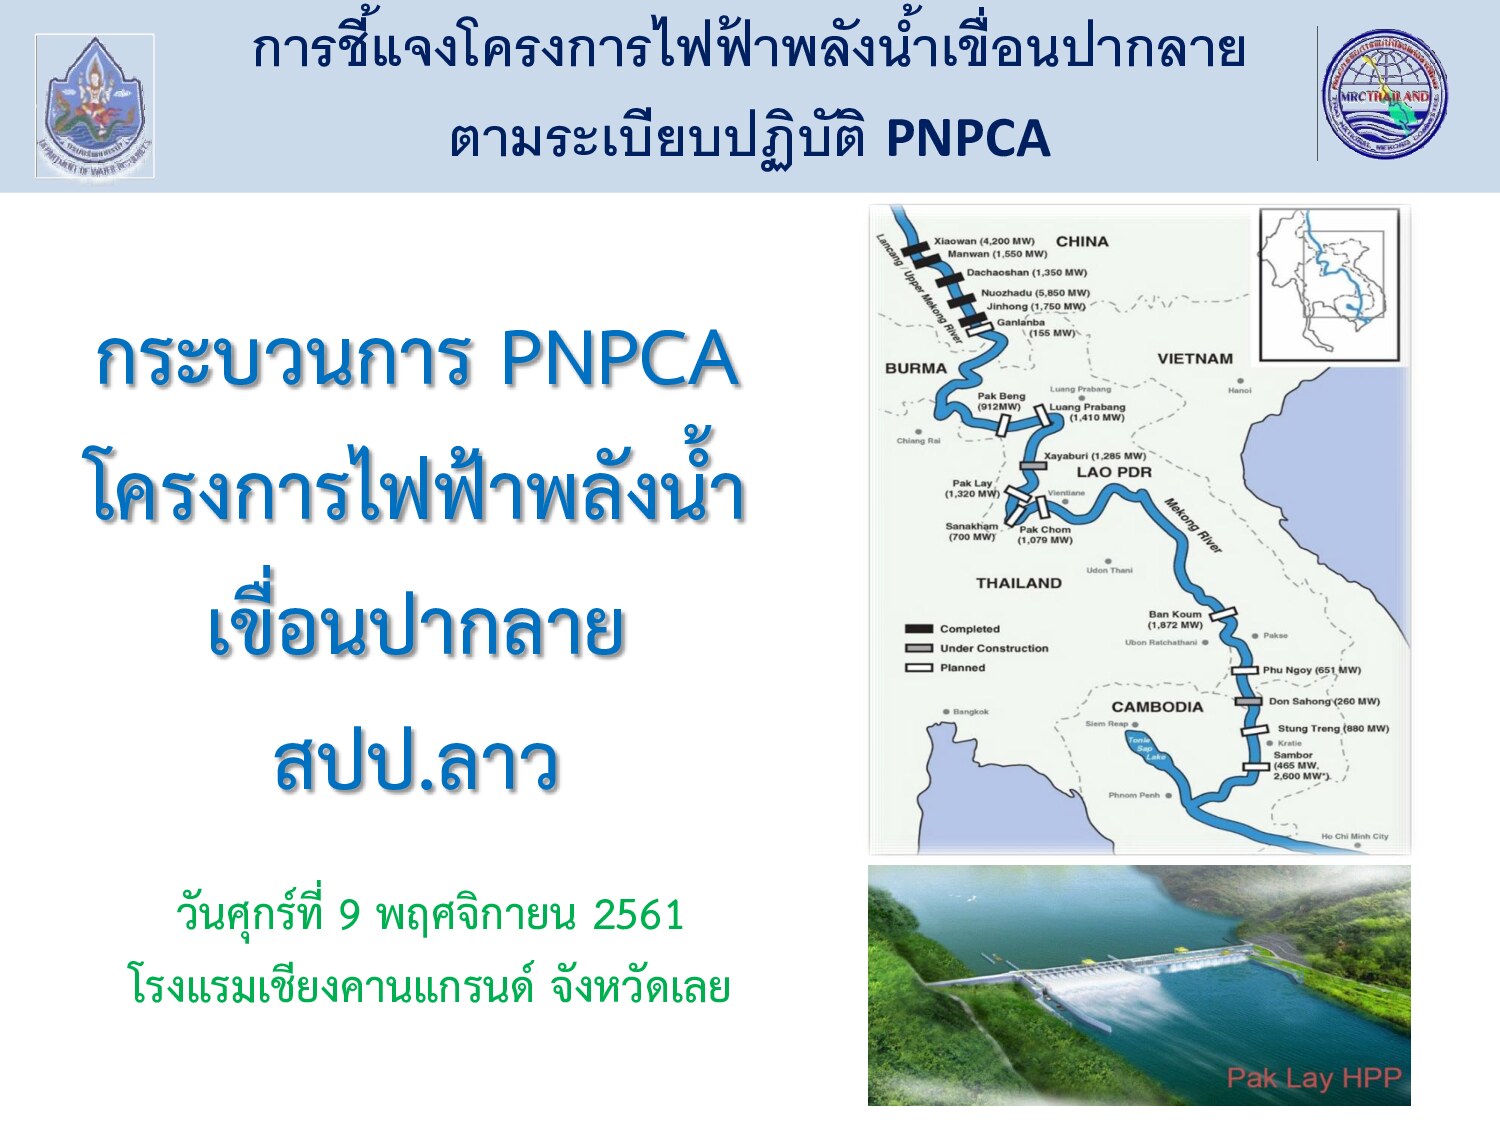 1.การชี้แจงโครงการไฟฟ้าพลังน้ำเขื่อนปากลาย ตามระเบียบปฏิบัติ PNPCA